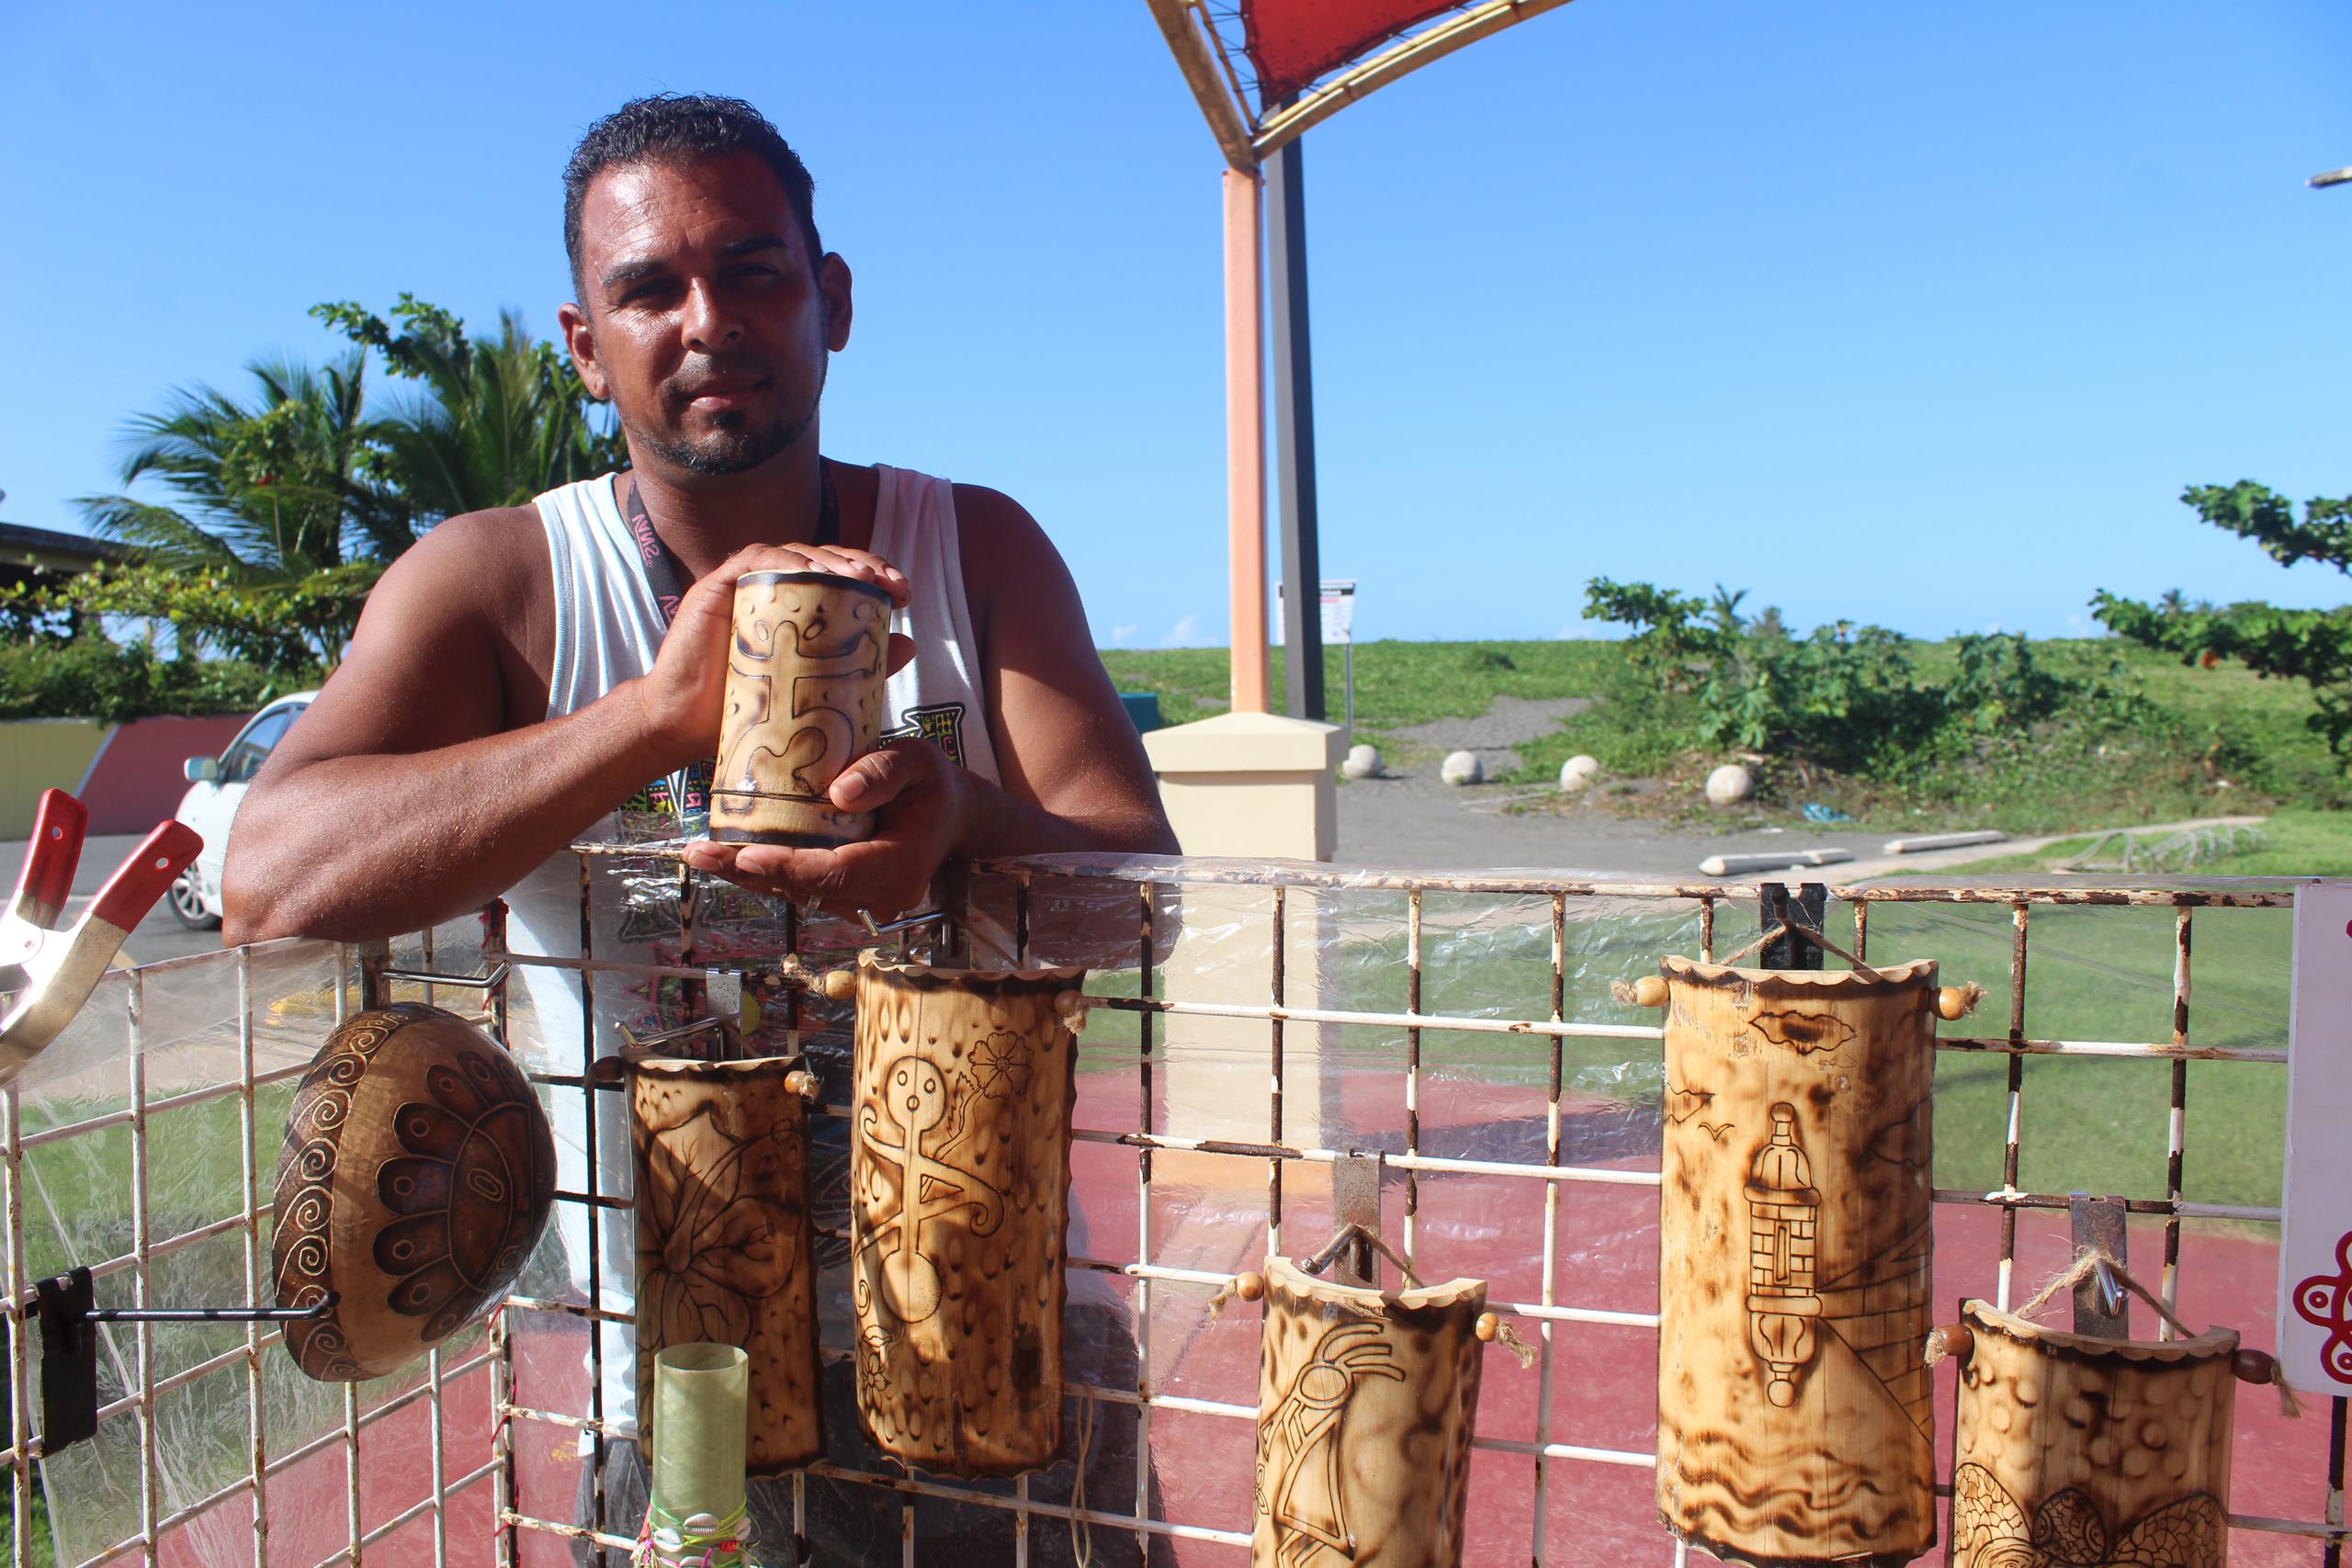 Julio E. Maldonado promueve sus trabajos de pirograbados, tallados en madera y vasos en bambú.